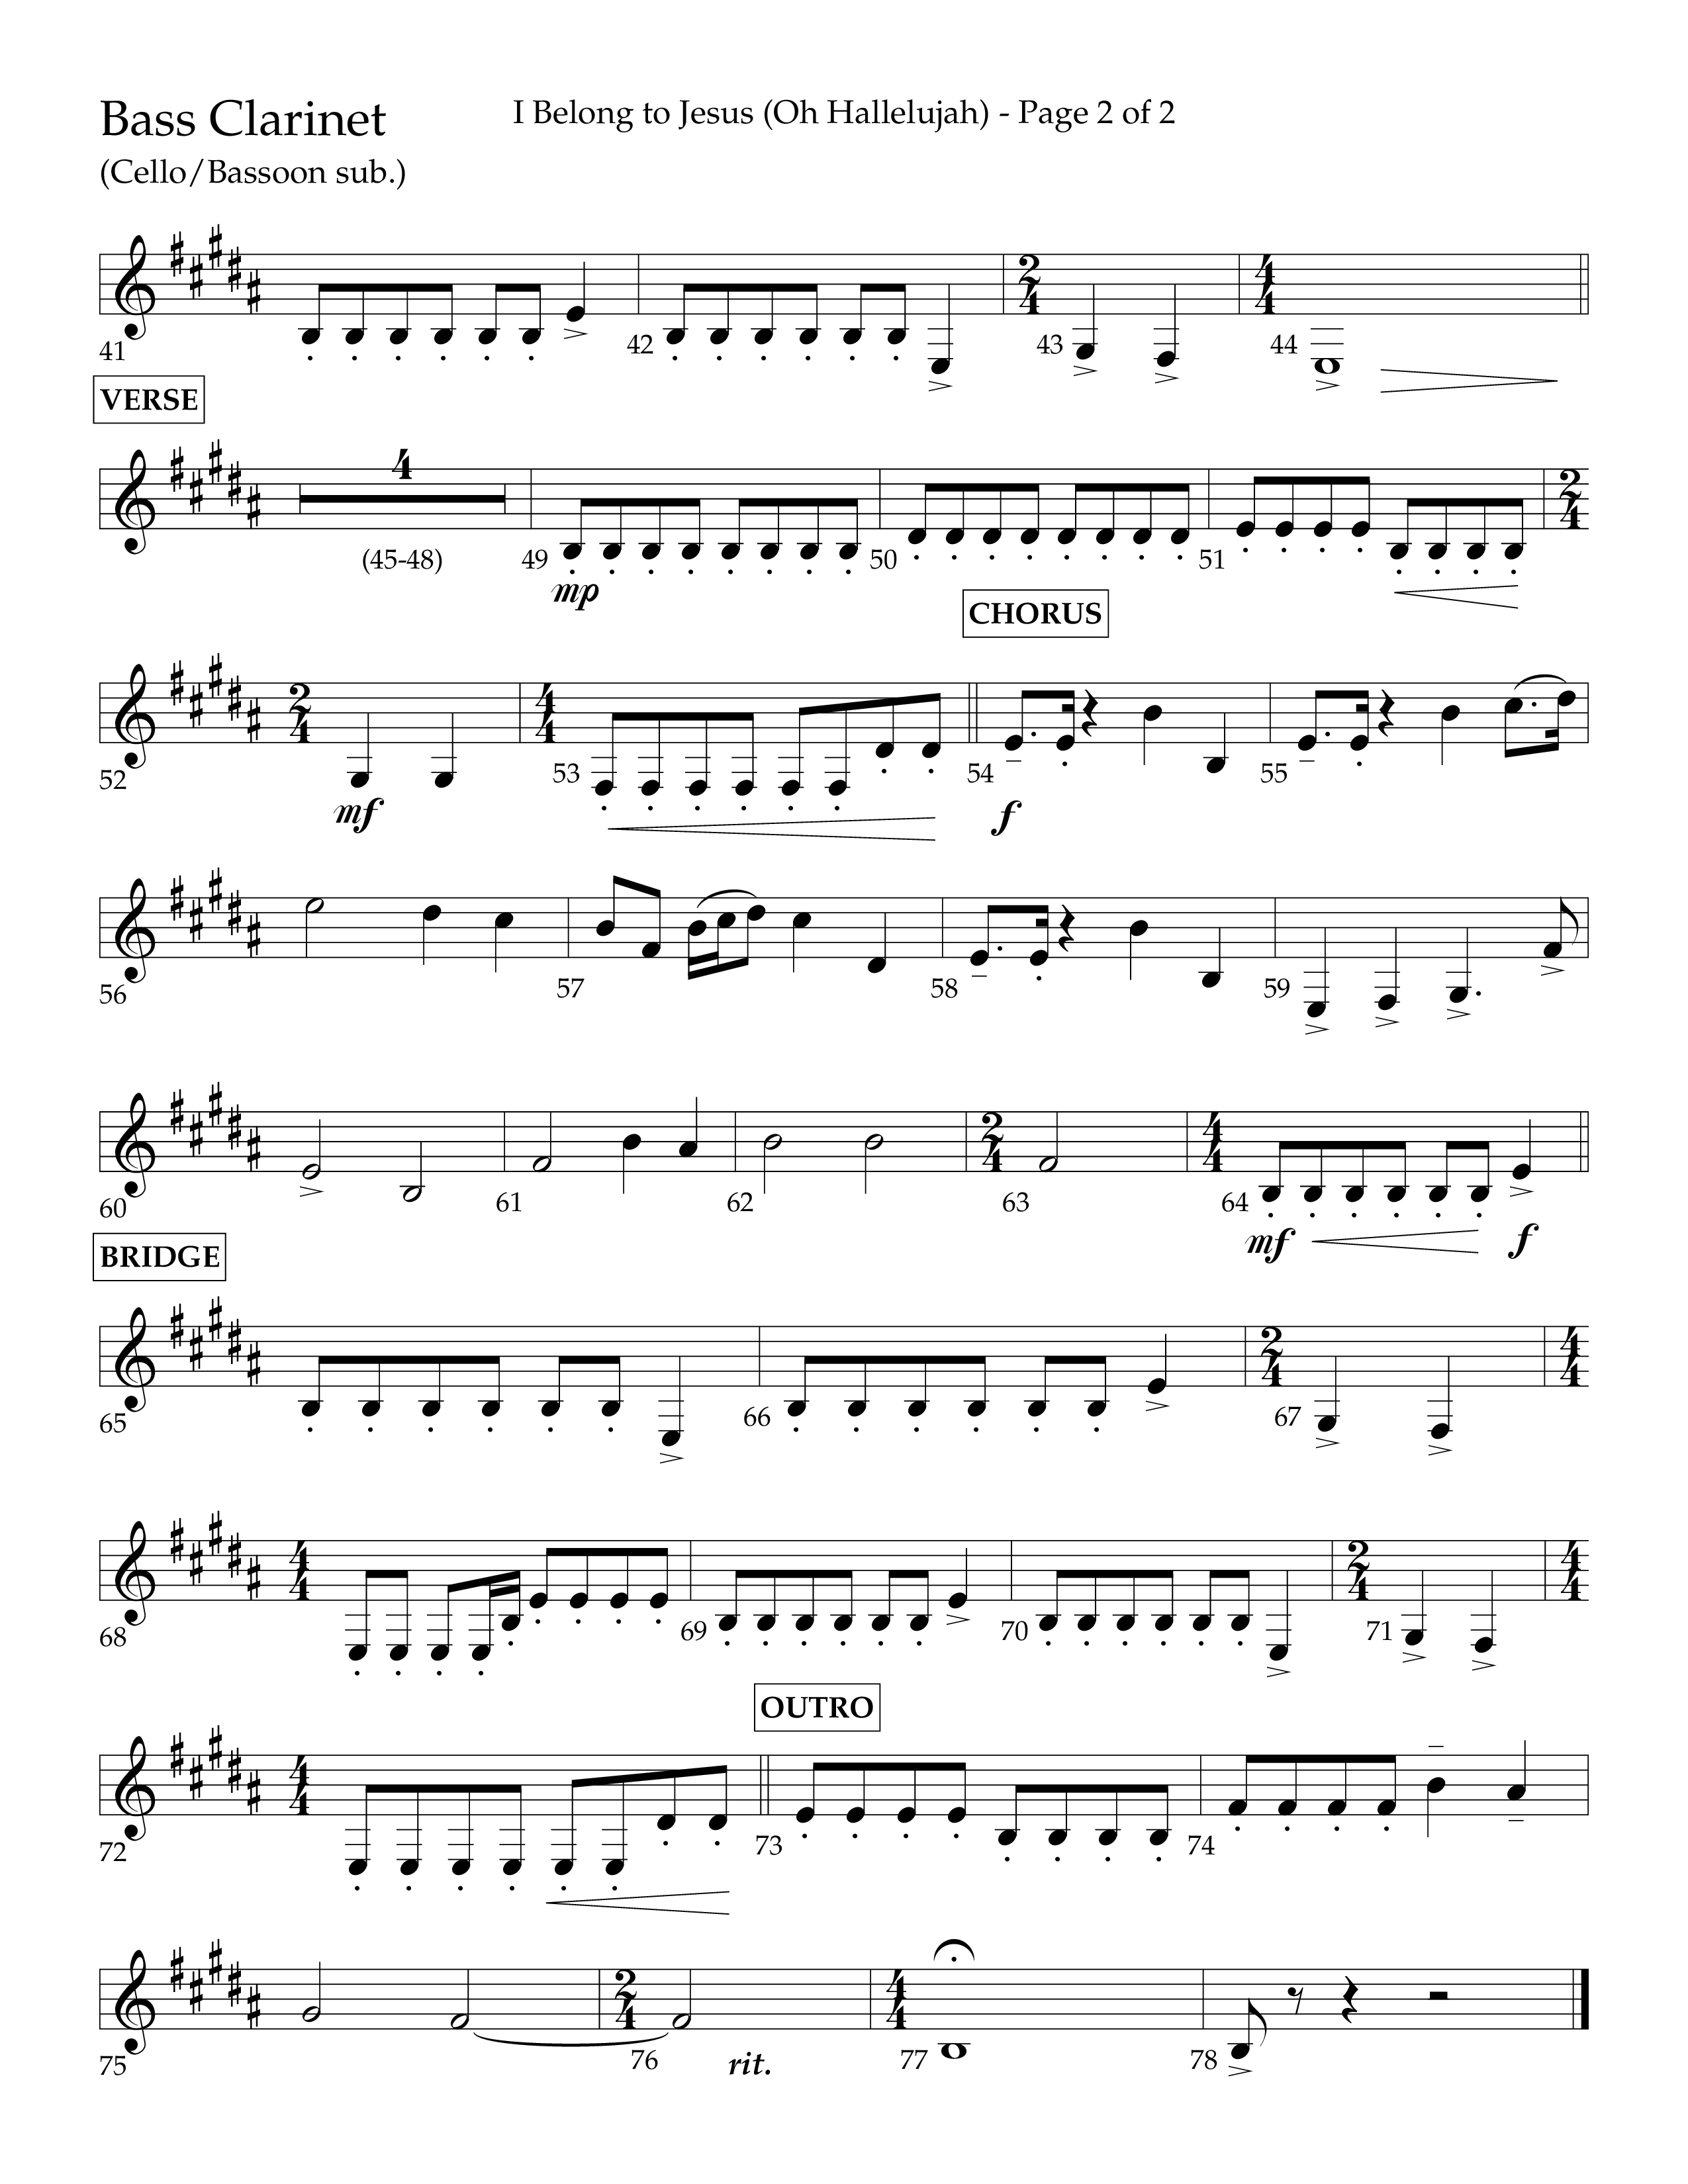 I Belong To Jesus (Hallelujah) (Choral Anthem SATB) Bass Clarinet (Lifeway Choral / Arr. Luke Gambill / Orch. Josh Stewart)